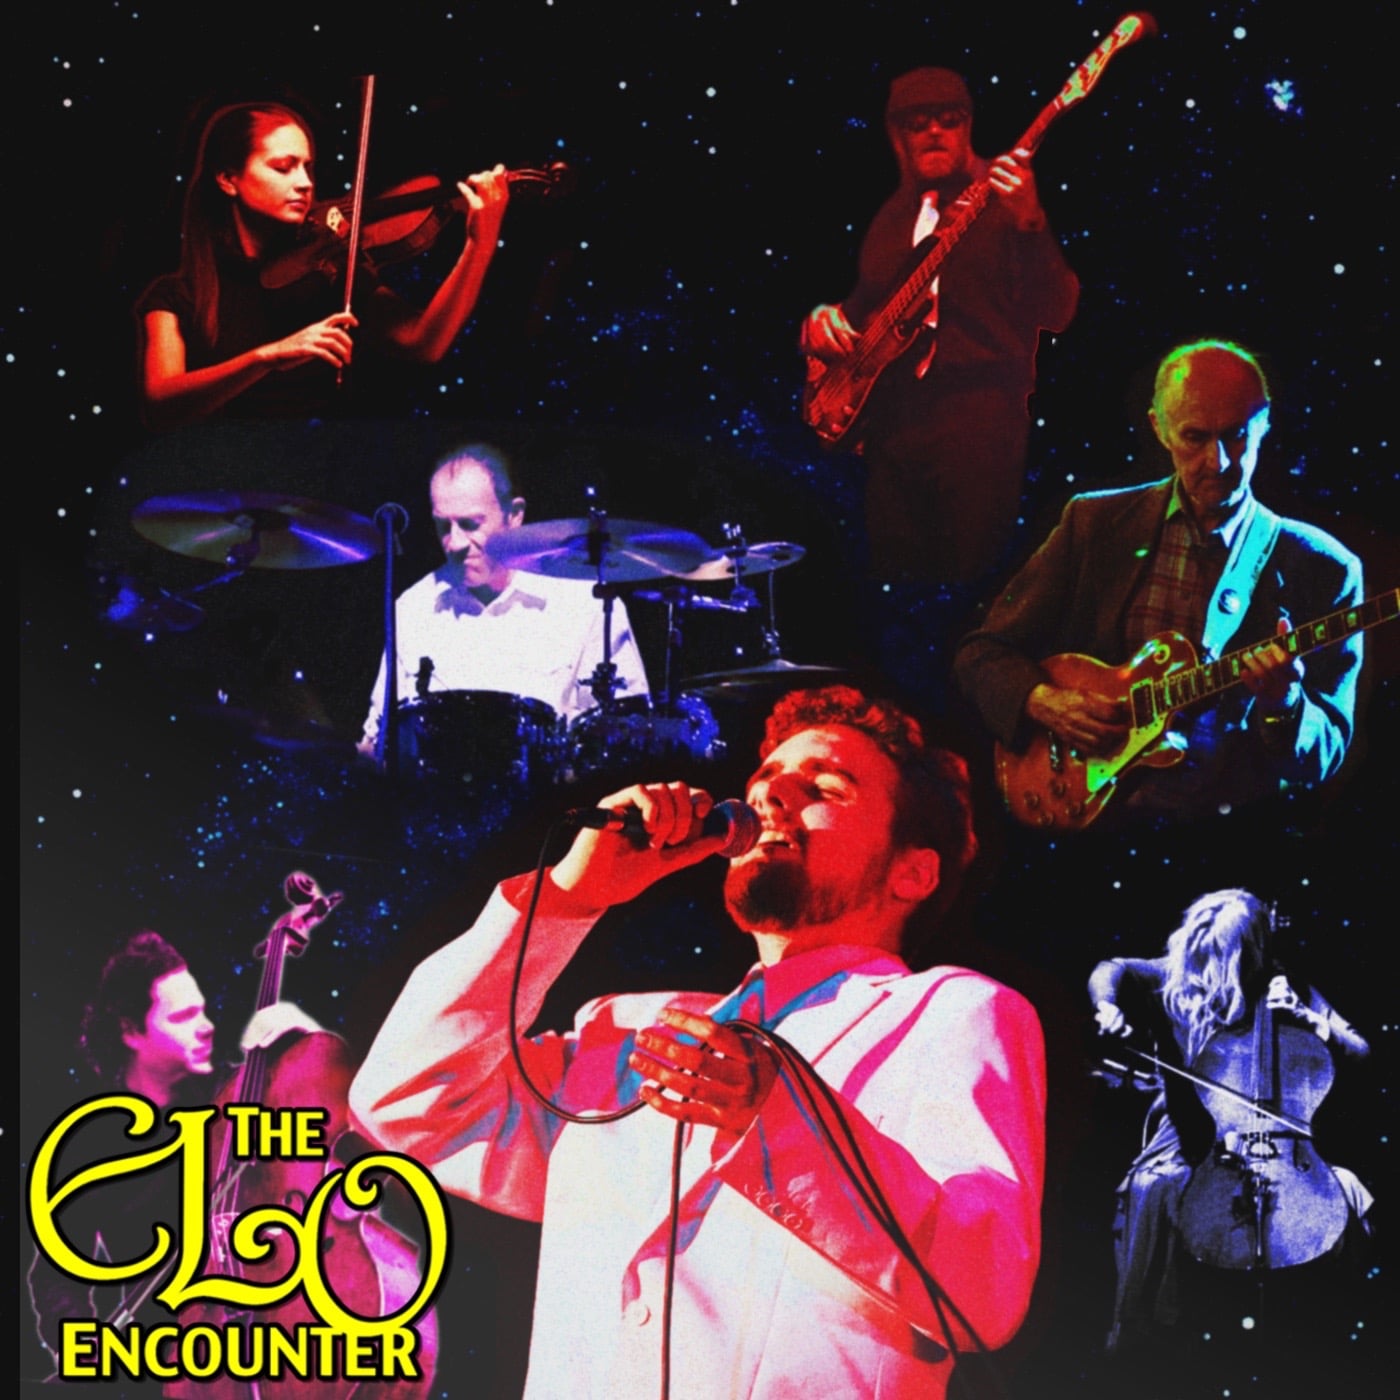 The ELO Encounter Band